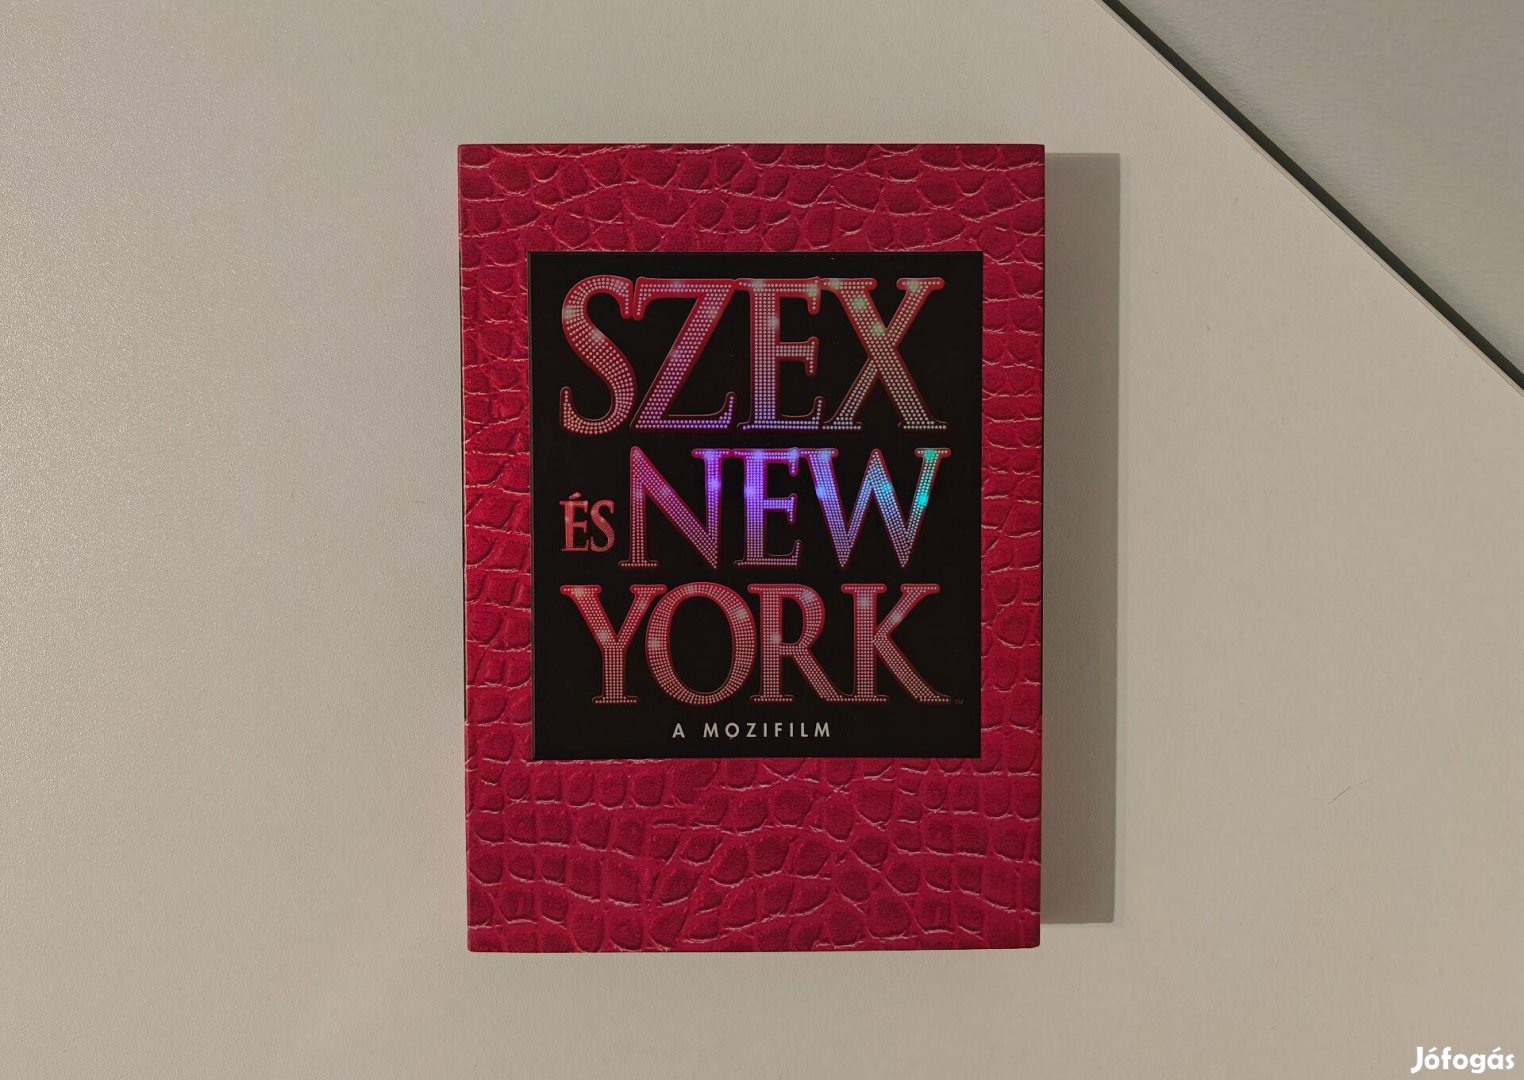 Szex és New York - A mozifilm